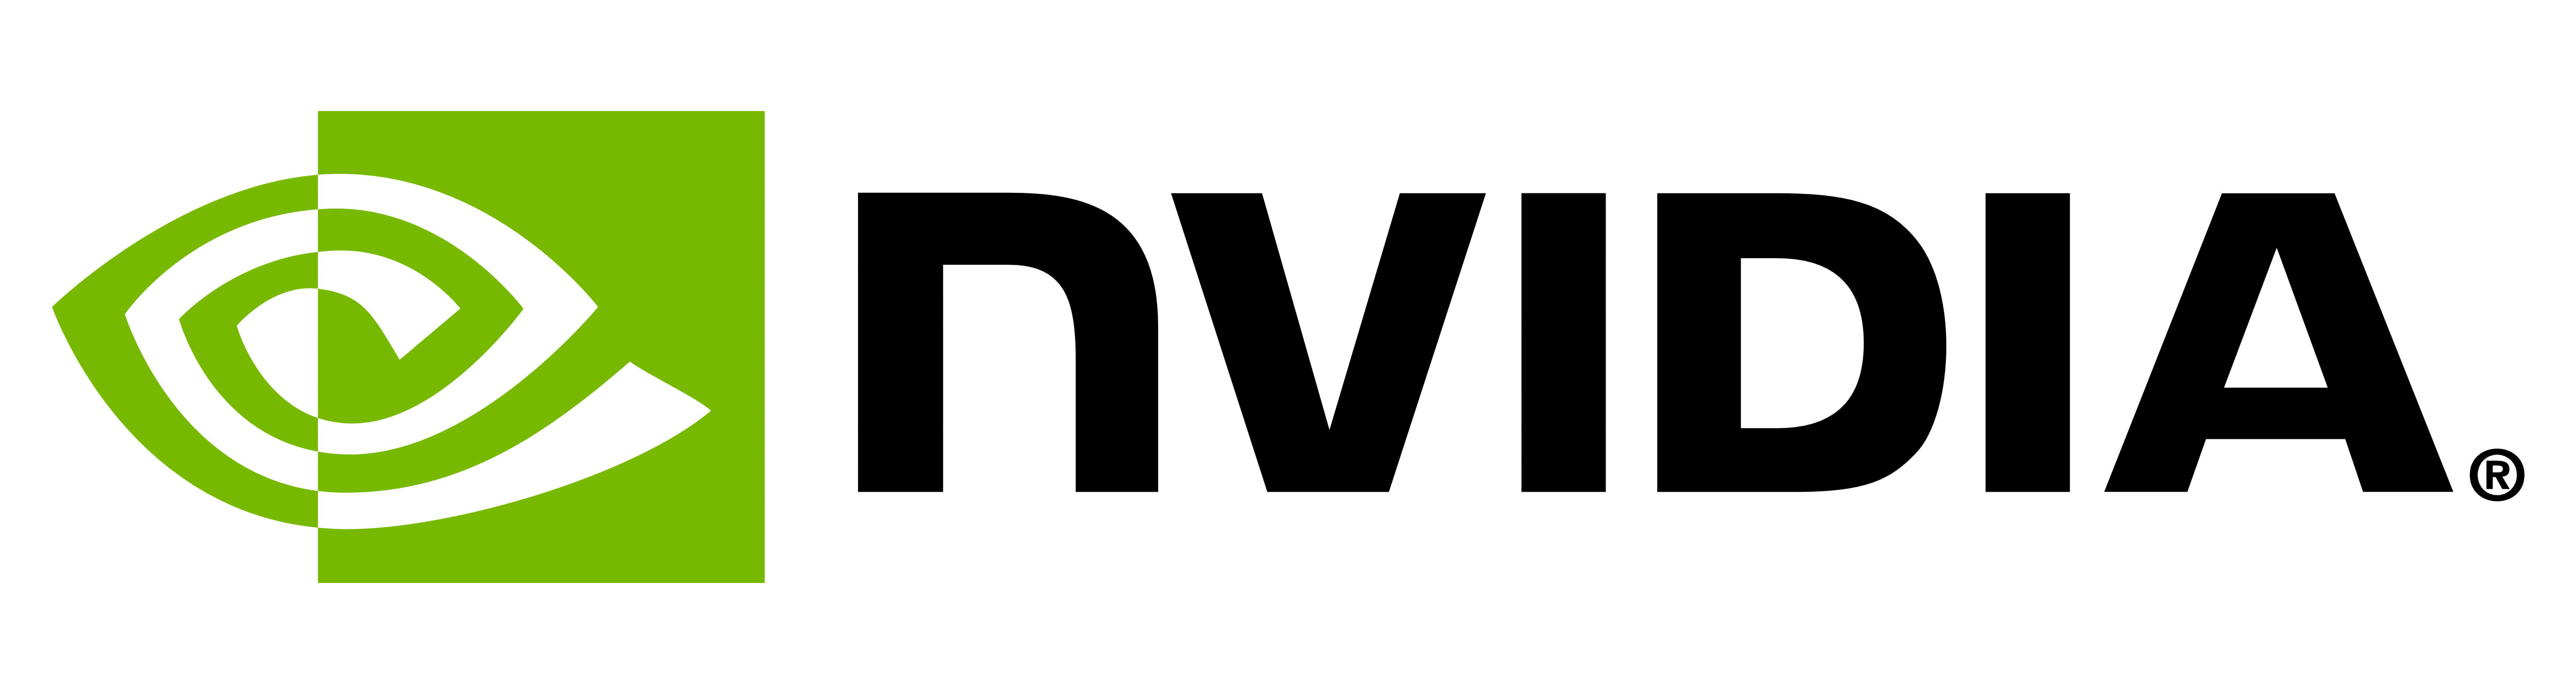 मतलब NVIDIA लोगो और प्रतीक | इतिहास और विकास